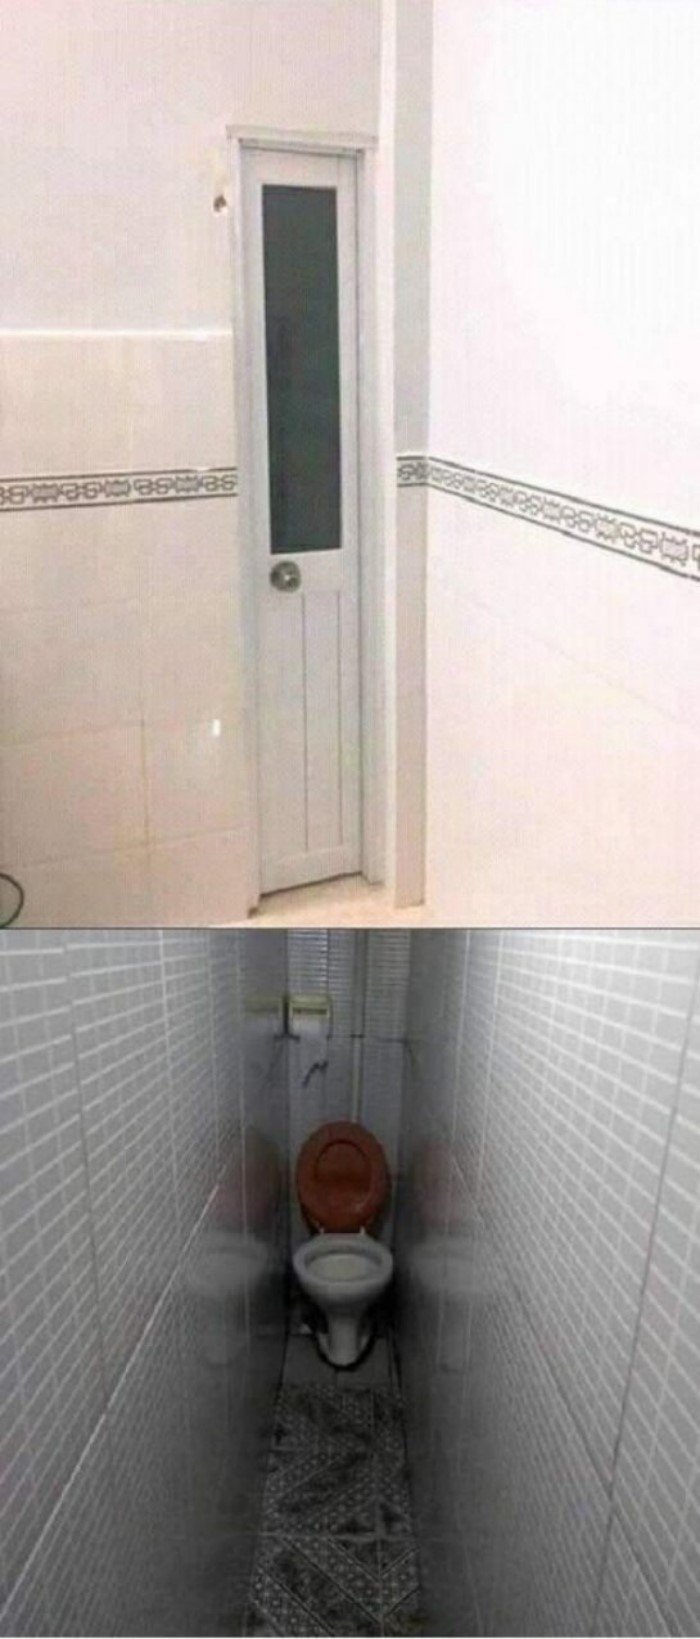 Подсмотренное в женском туалете - скрытая камера